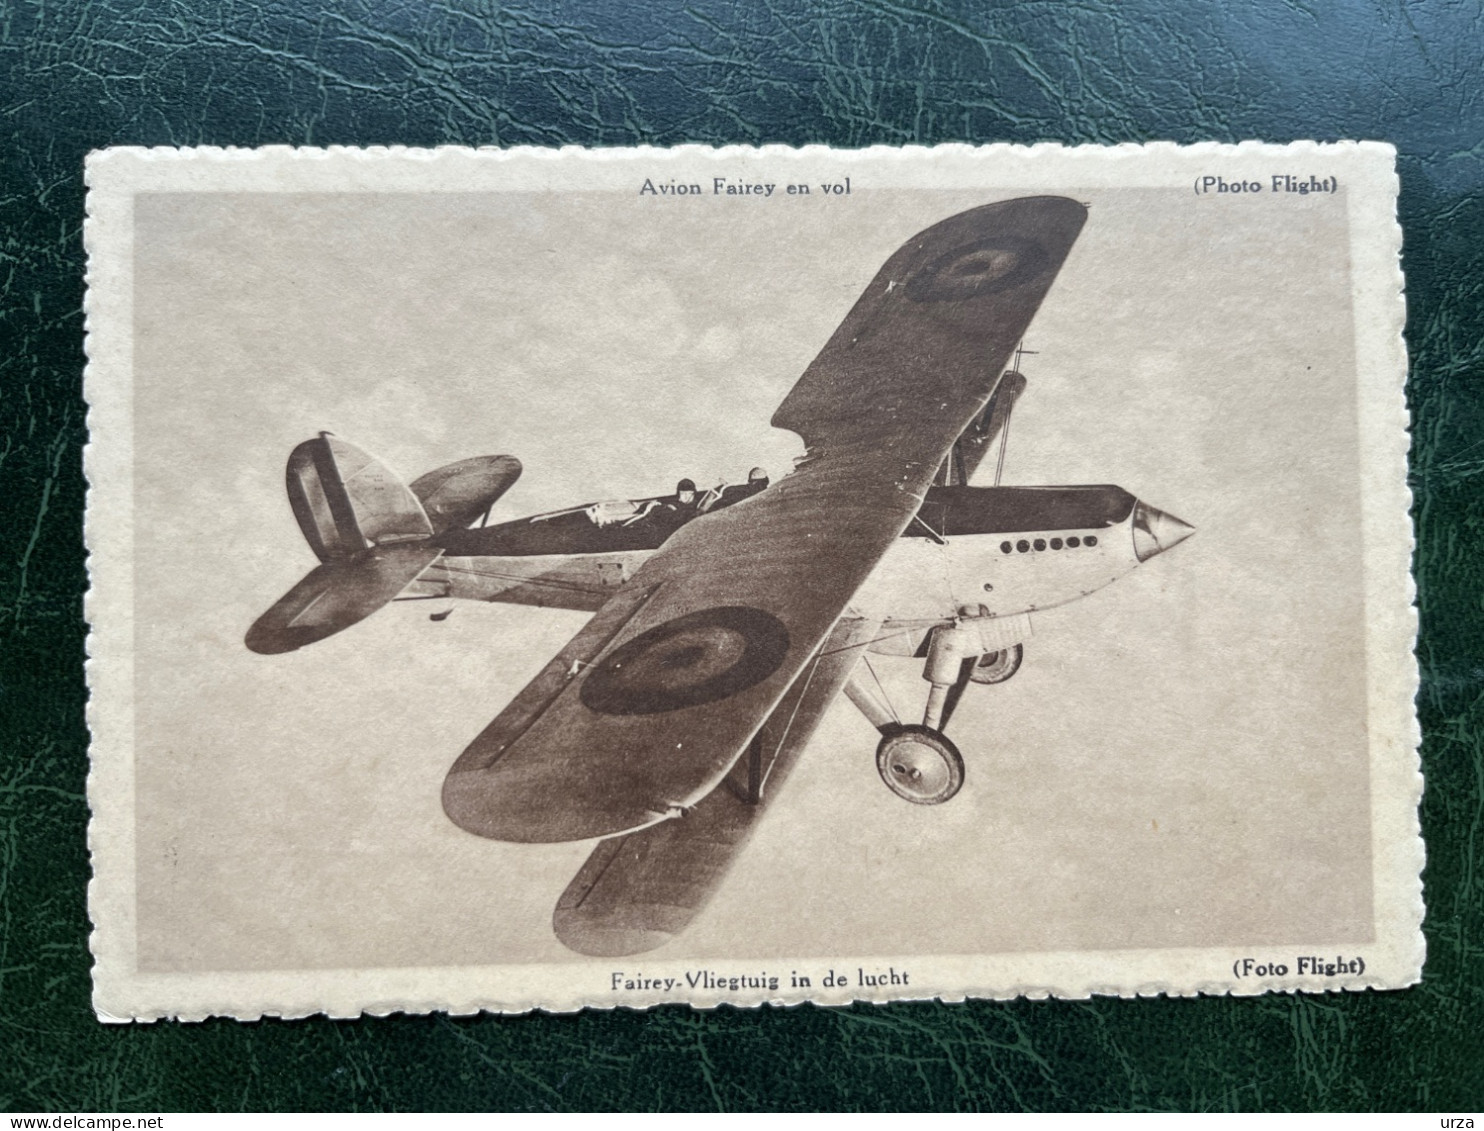 SABENA@rare pochette propagande aéronautique@+ collection de cartes.